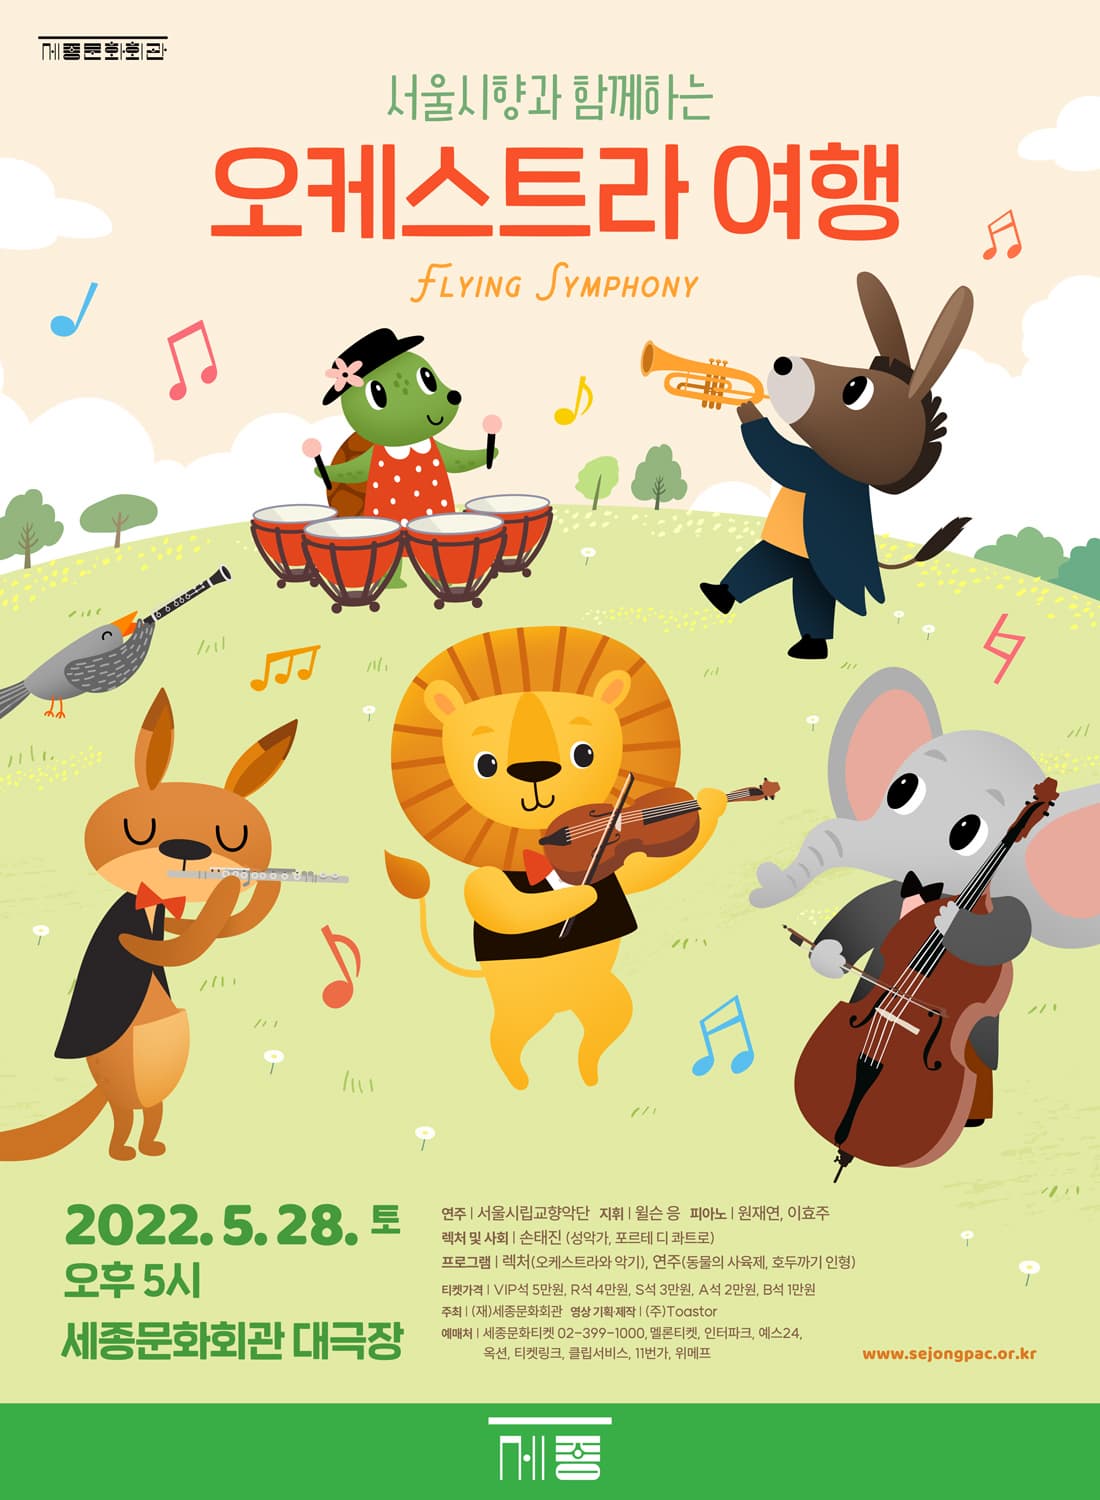 2022.5.28 | 오후 5시 | 세종문화회관 대극장 | 서울시향과 함께하는 '오케스트라 여행'